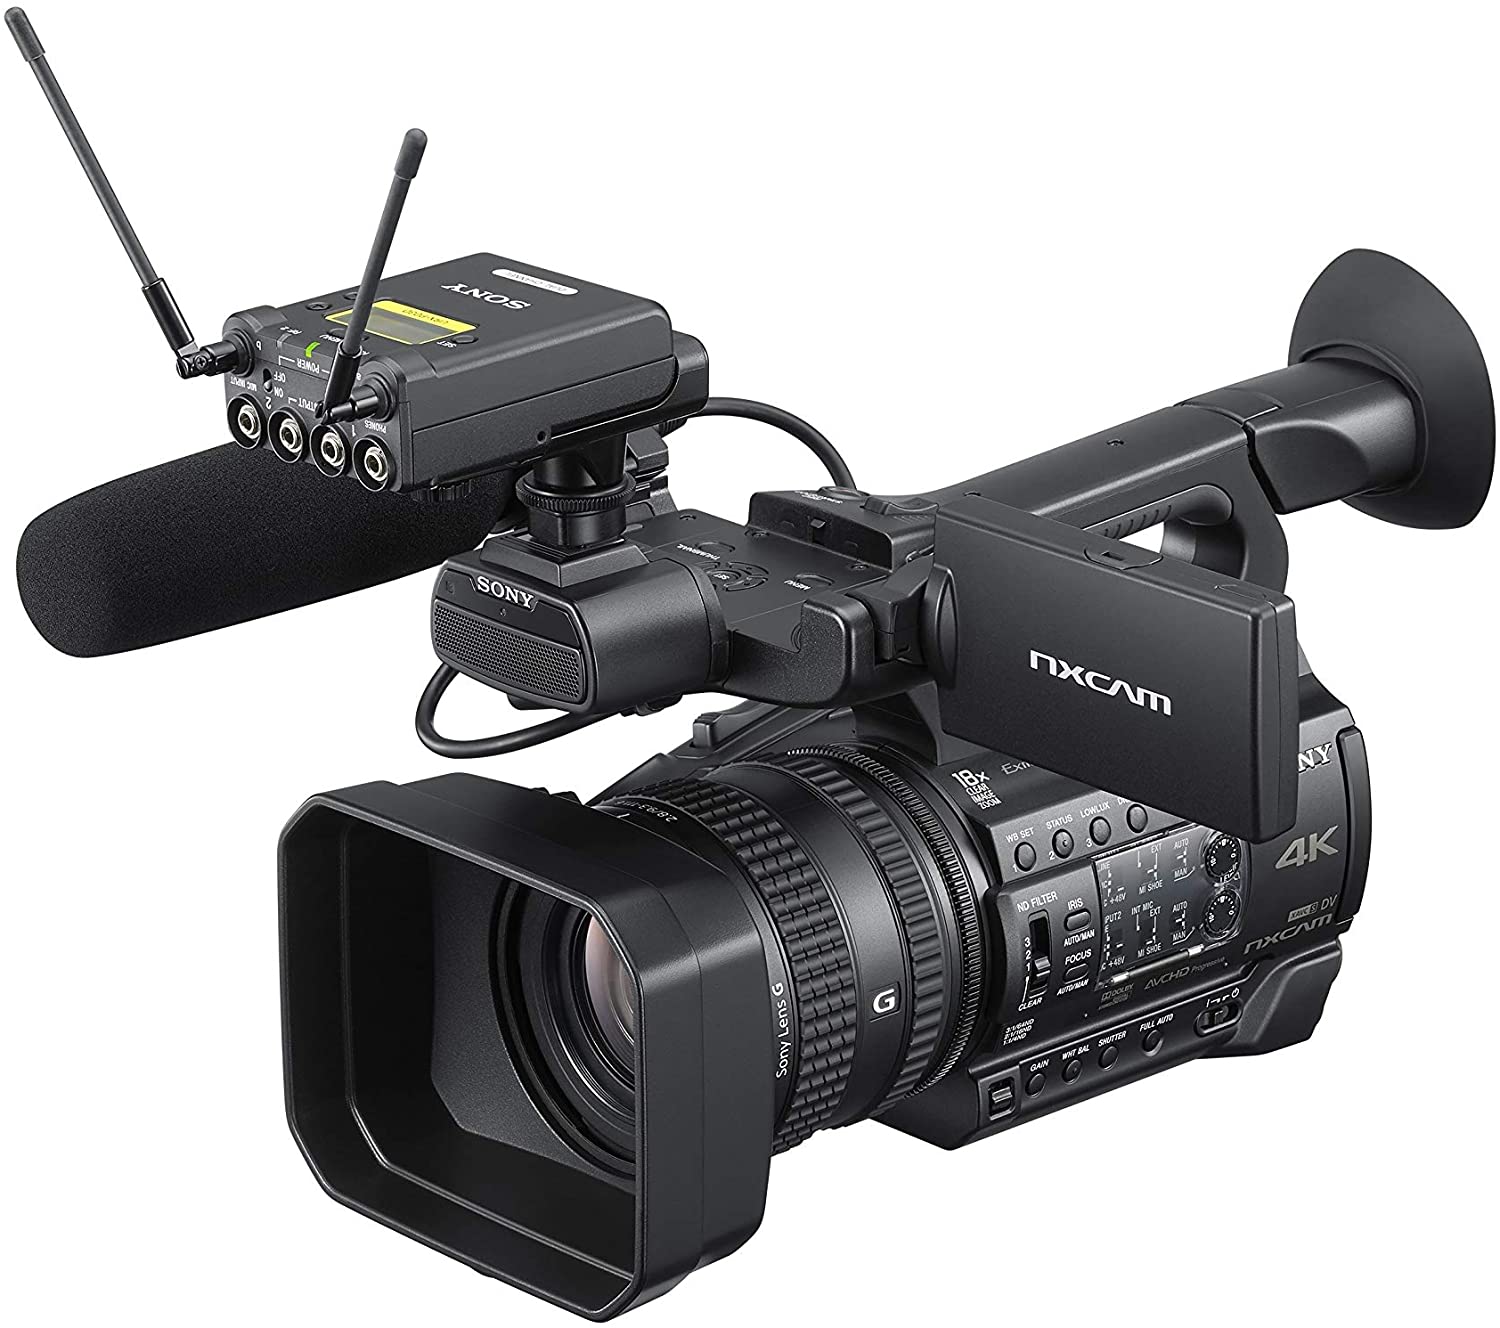 Khám phá sức mạnh của Sony HXR-NX200 - một chiếc máy quay video chất lượng cao với cảm biến 1.0-type Exmor R™ CMOS và ống kính zoom quang học 24x. Với thiết kế nhỏ gọn và tính năng chống rung quang học, máy quay này sẽ là lựa chọn hoàn hảo cho các nhà làm phim chuyên nghiệp và tình nguyện viên yêu thích.